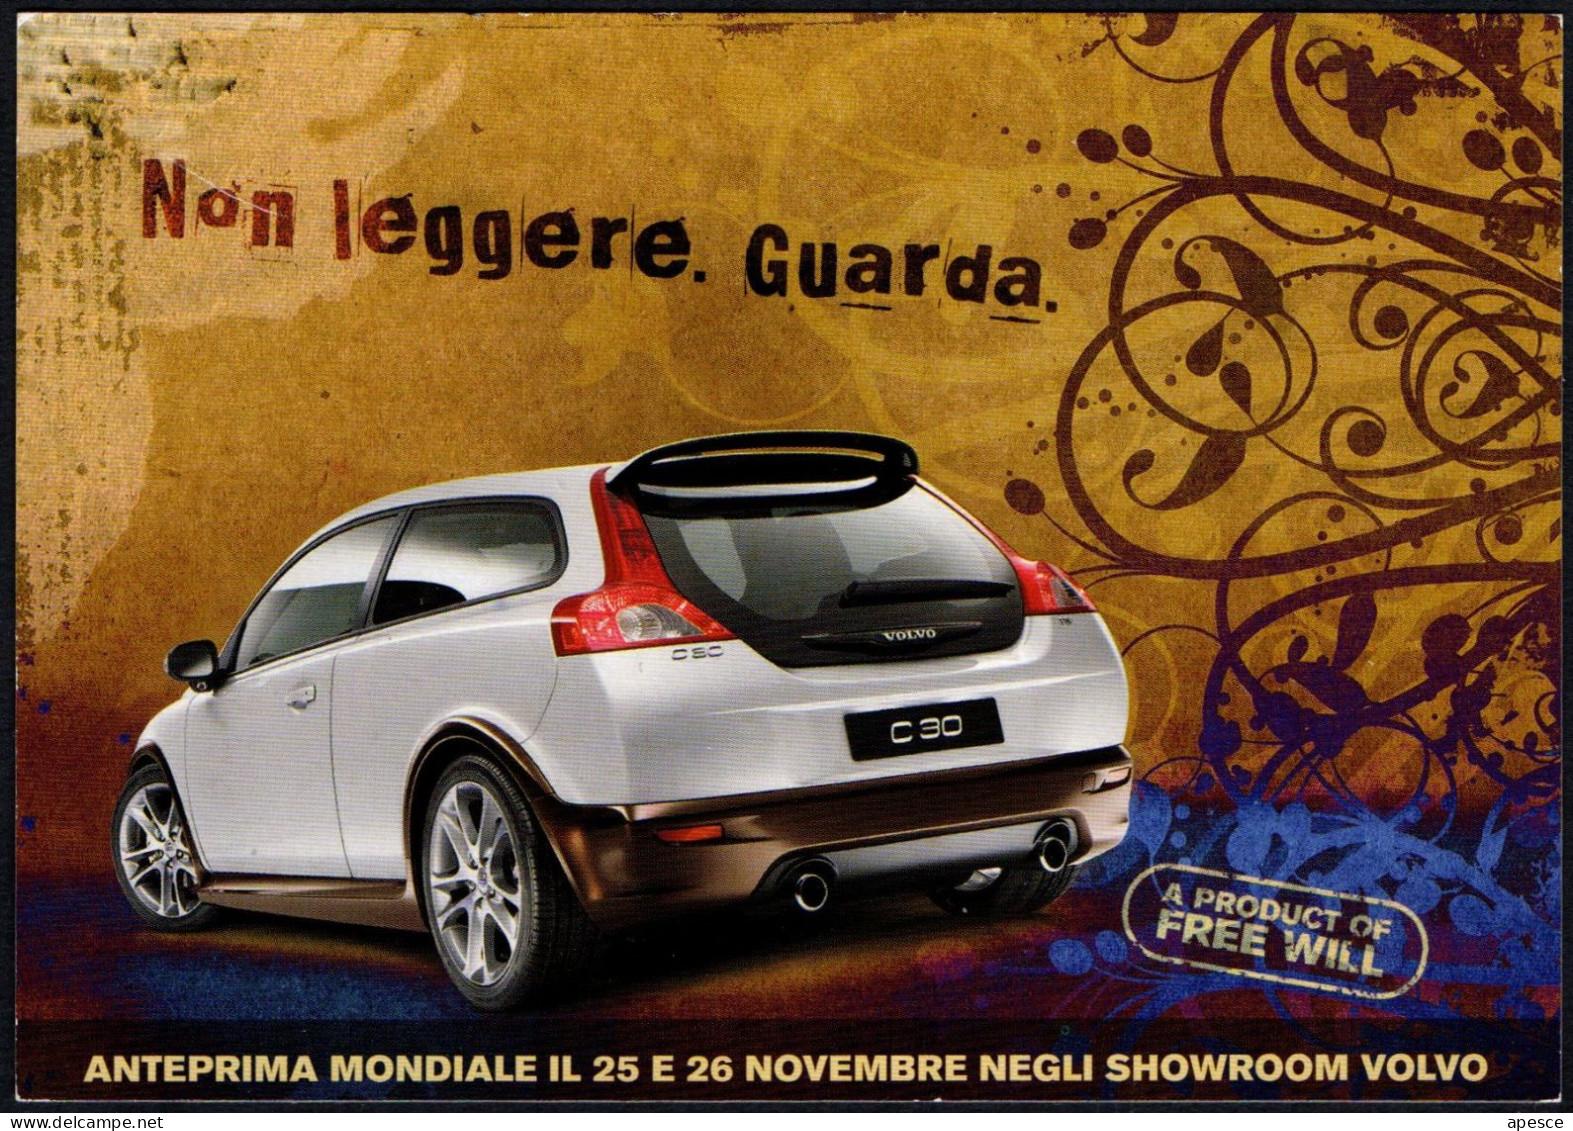 CARS - ITALIA 2006 - NON LEGGERE, GUARDA - PRESENTAZIONE NUOVA VOLVO C30 - I - Turismo